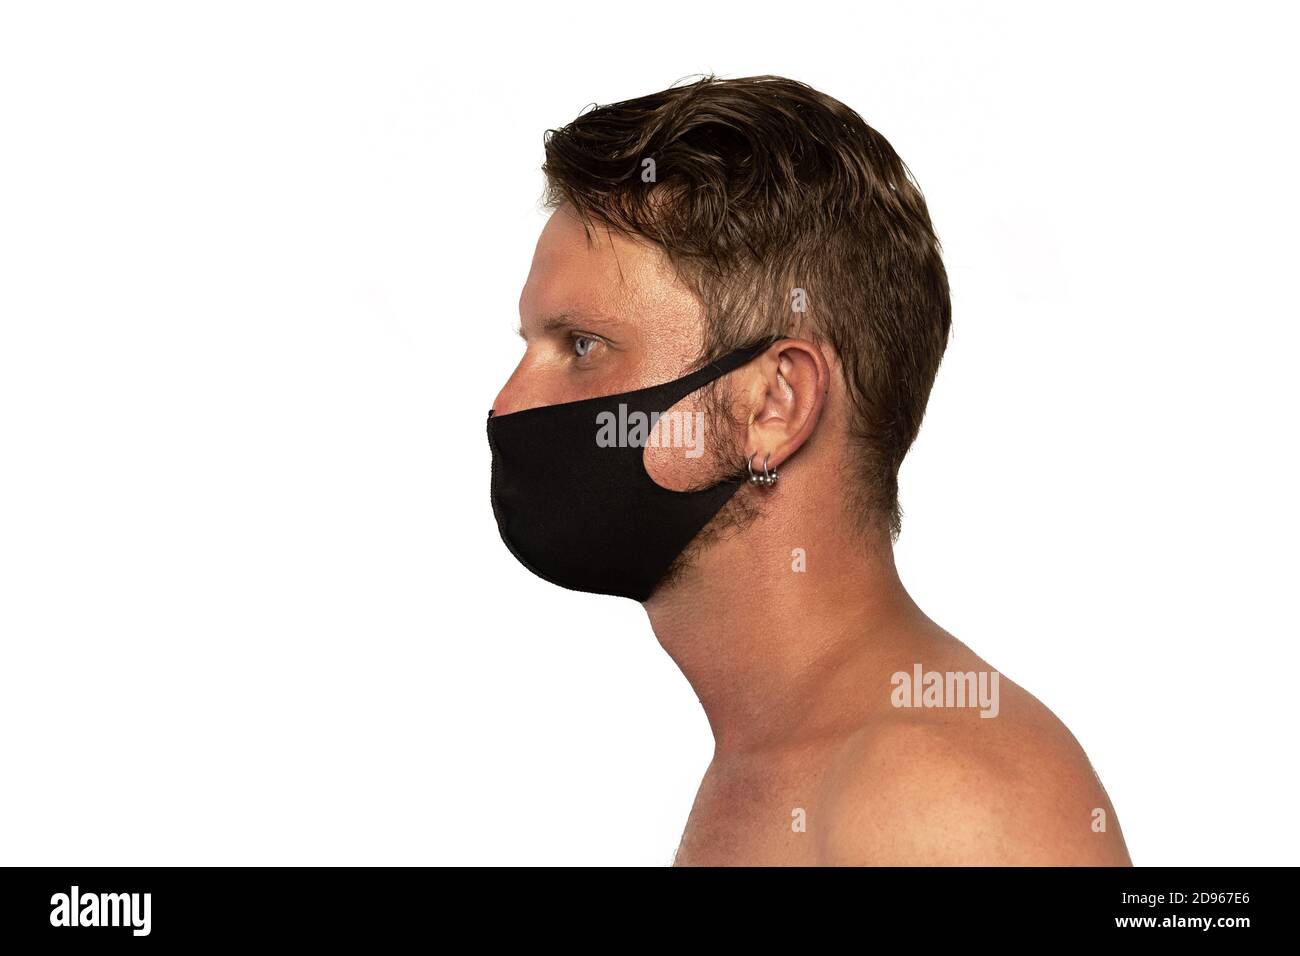 Le jeune homme porte un masque médical. Isolé sur fond blanc. Concept des épidémies de pneumonie, des épidémies de coronavirus et du danger des biologi Banque D'Images